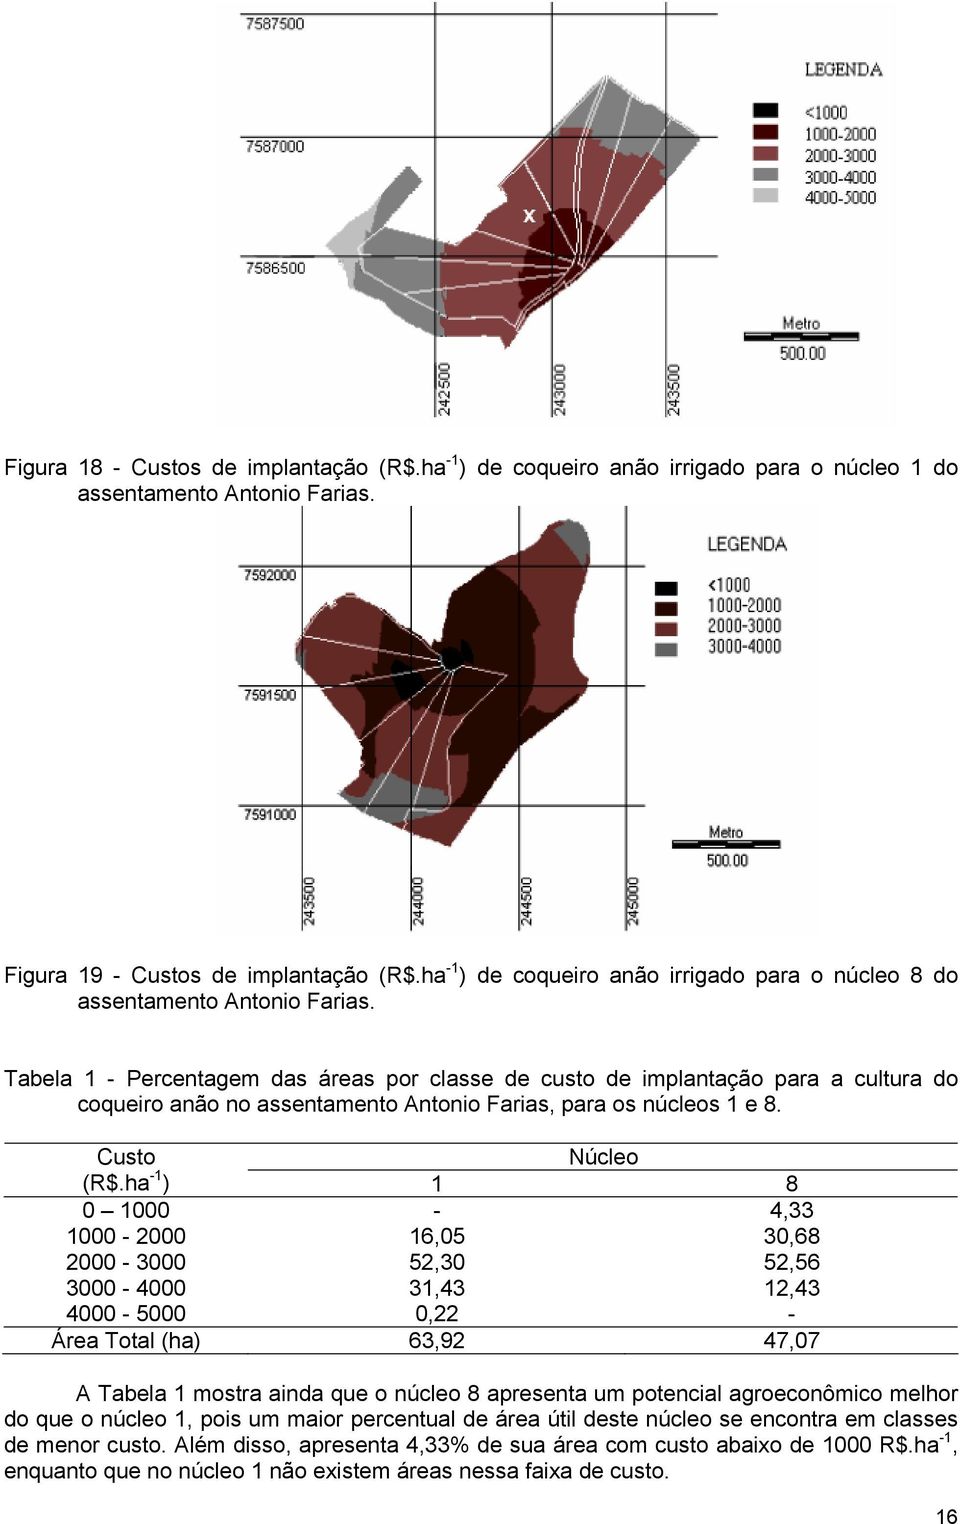 Tabela 1 - Percentagem das áreas por classe de custo de implantação para a cultura do coqueiro anão no assentamento Antonio Farias, para os núcleos 1 e 8. Núcleo (R$.